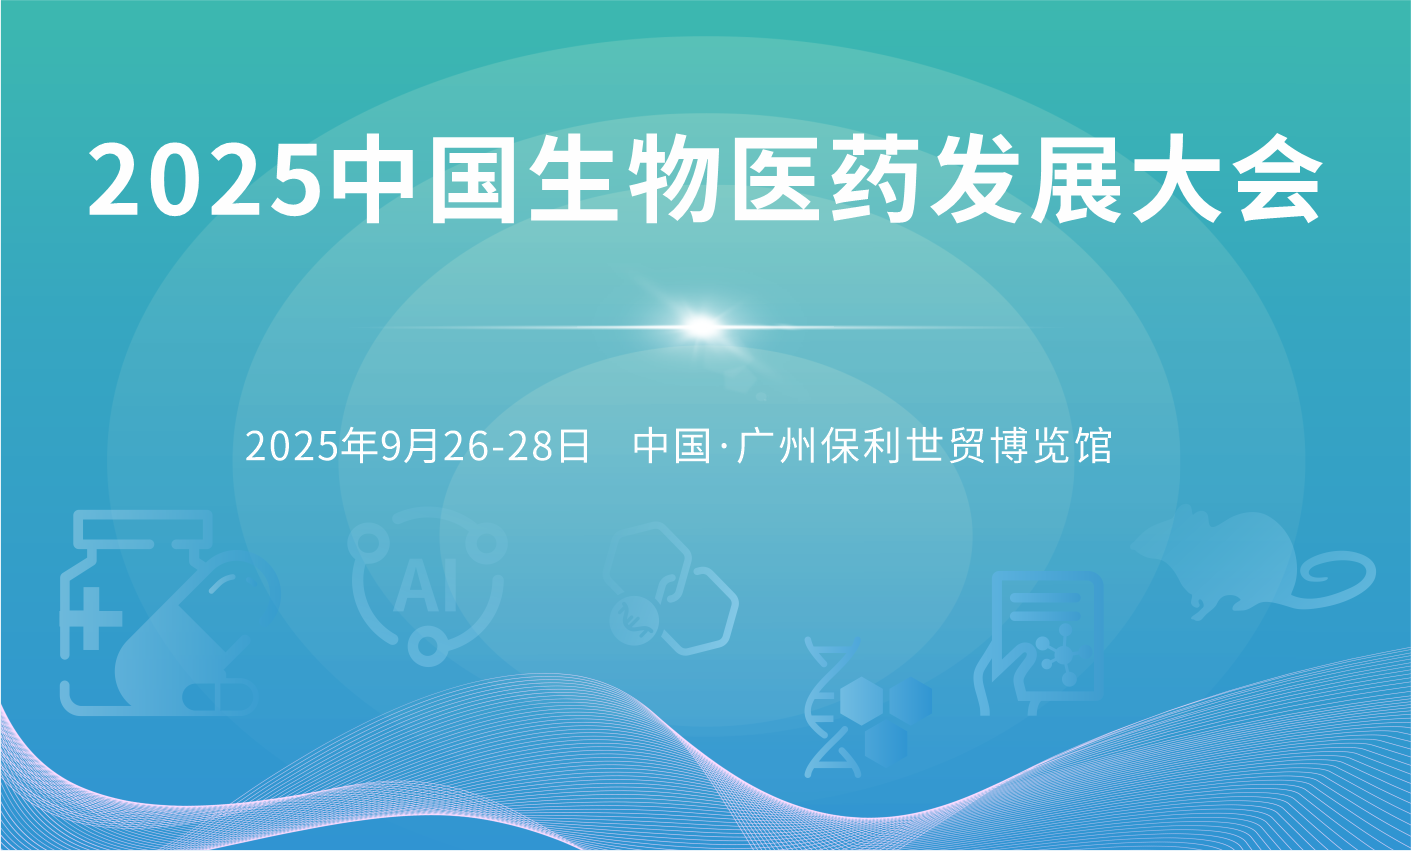 2025中国生物医药发展大会